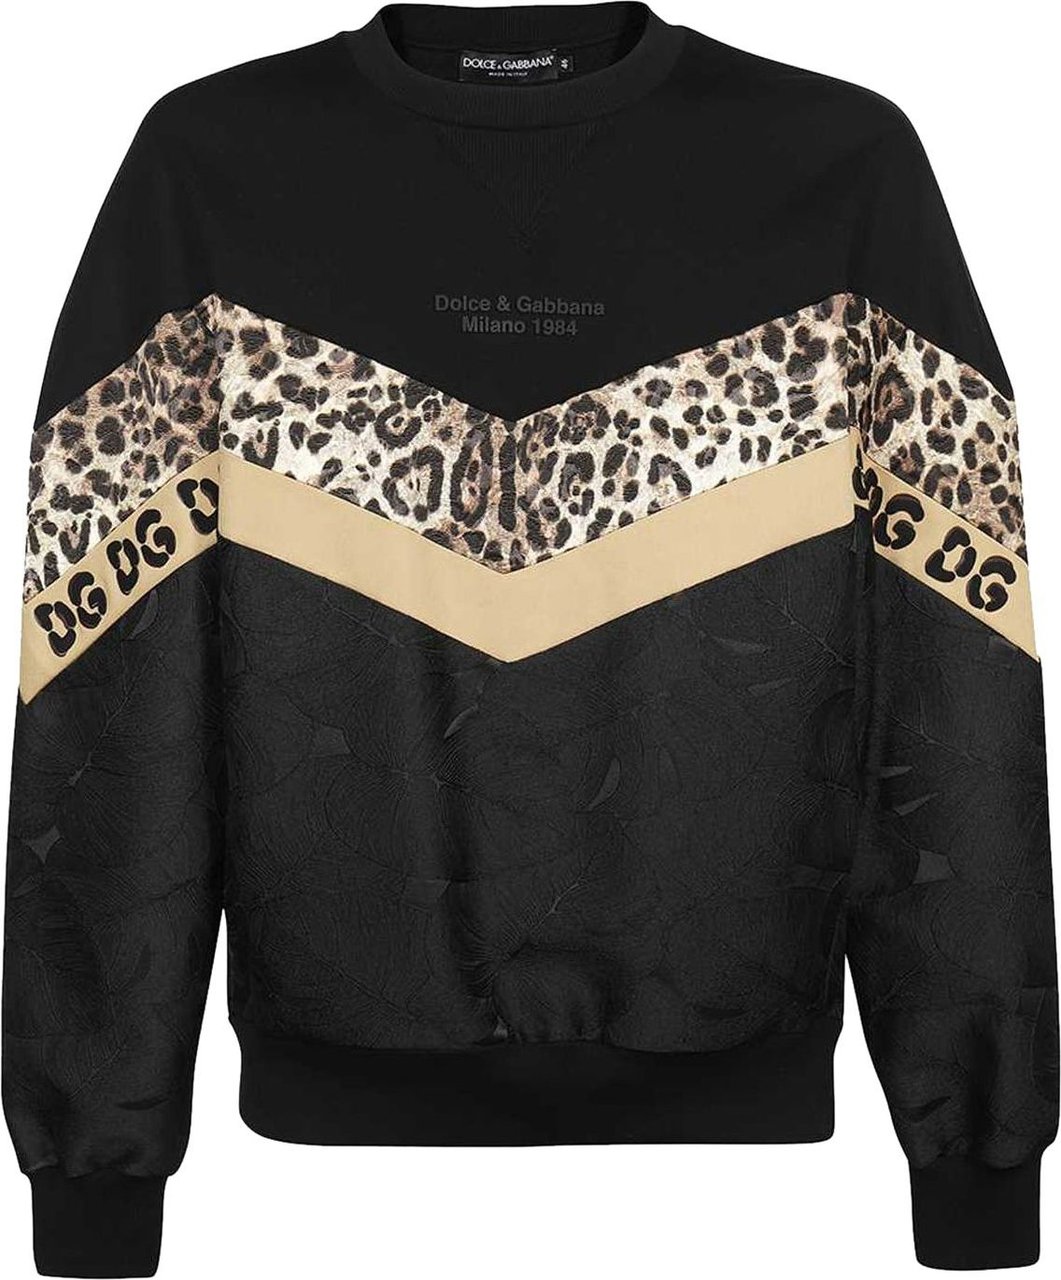 Dolce & Gabbana Dolce & Gabbana Printed Sweatshirt Zwart